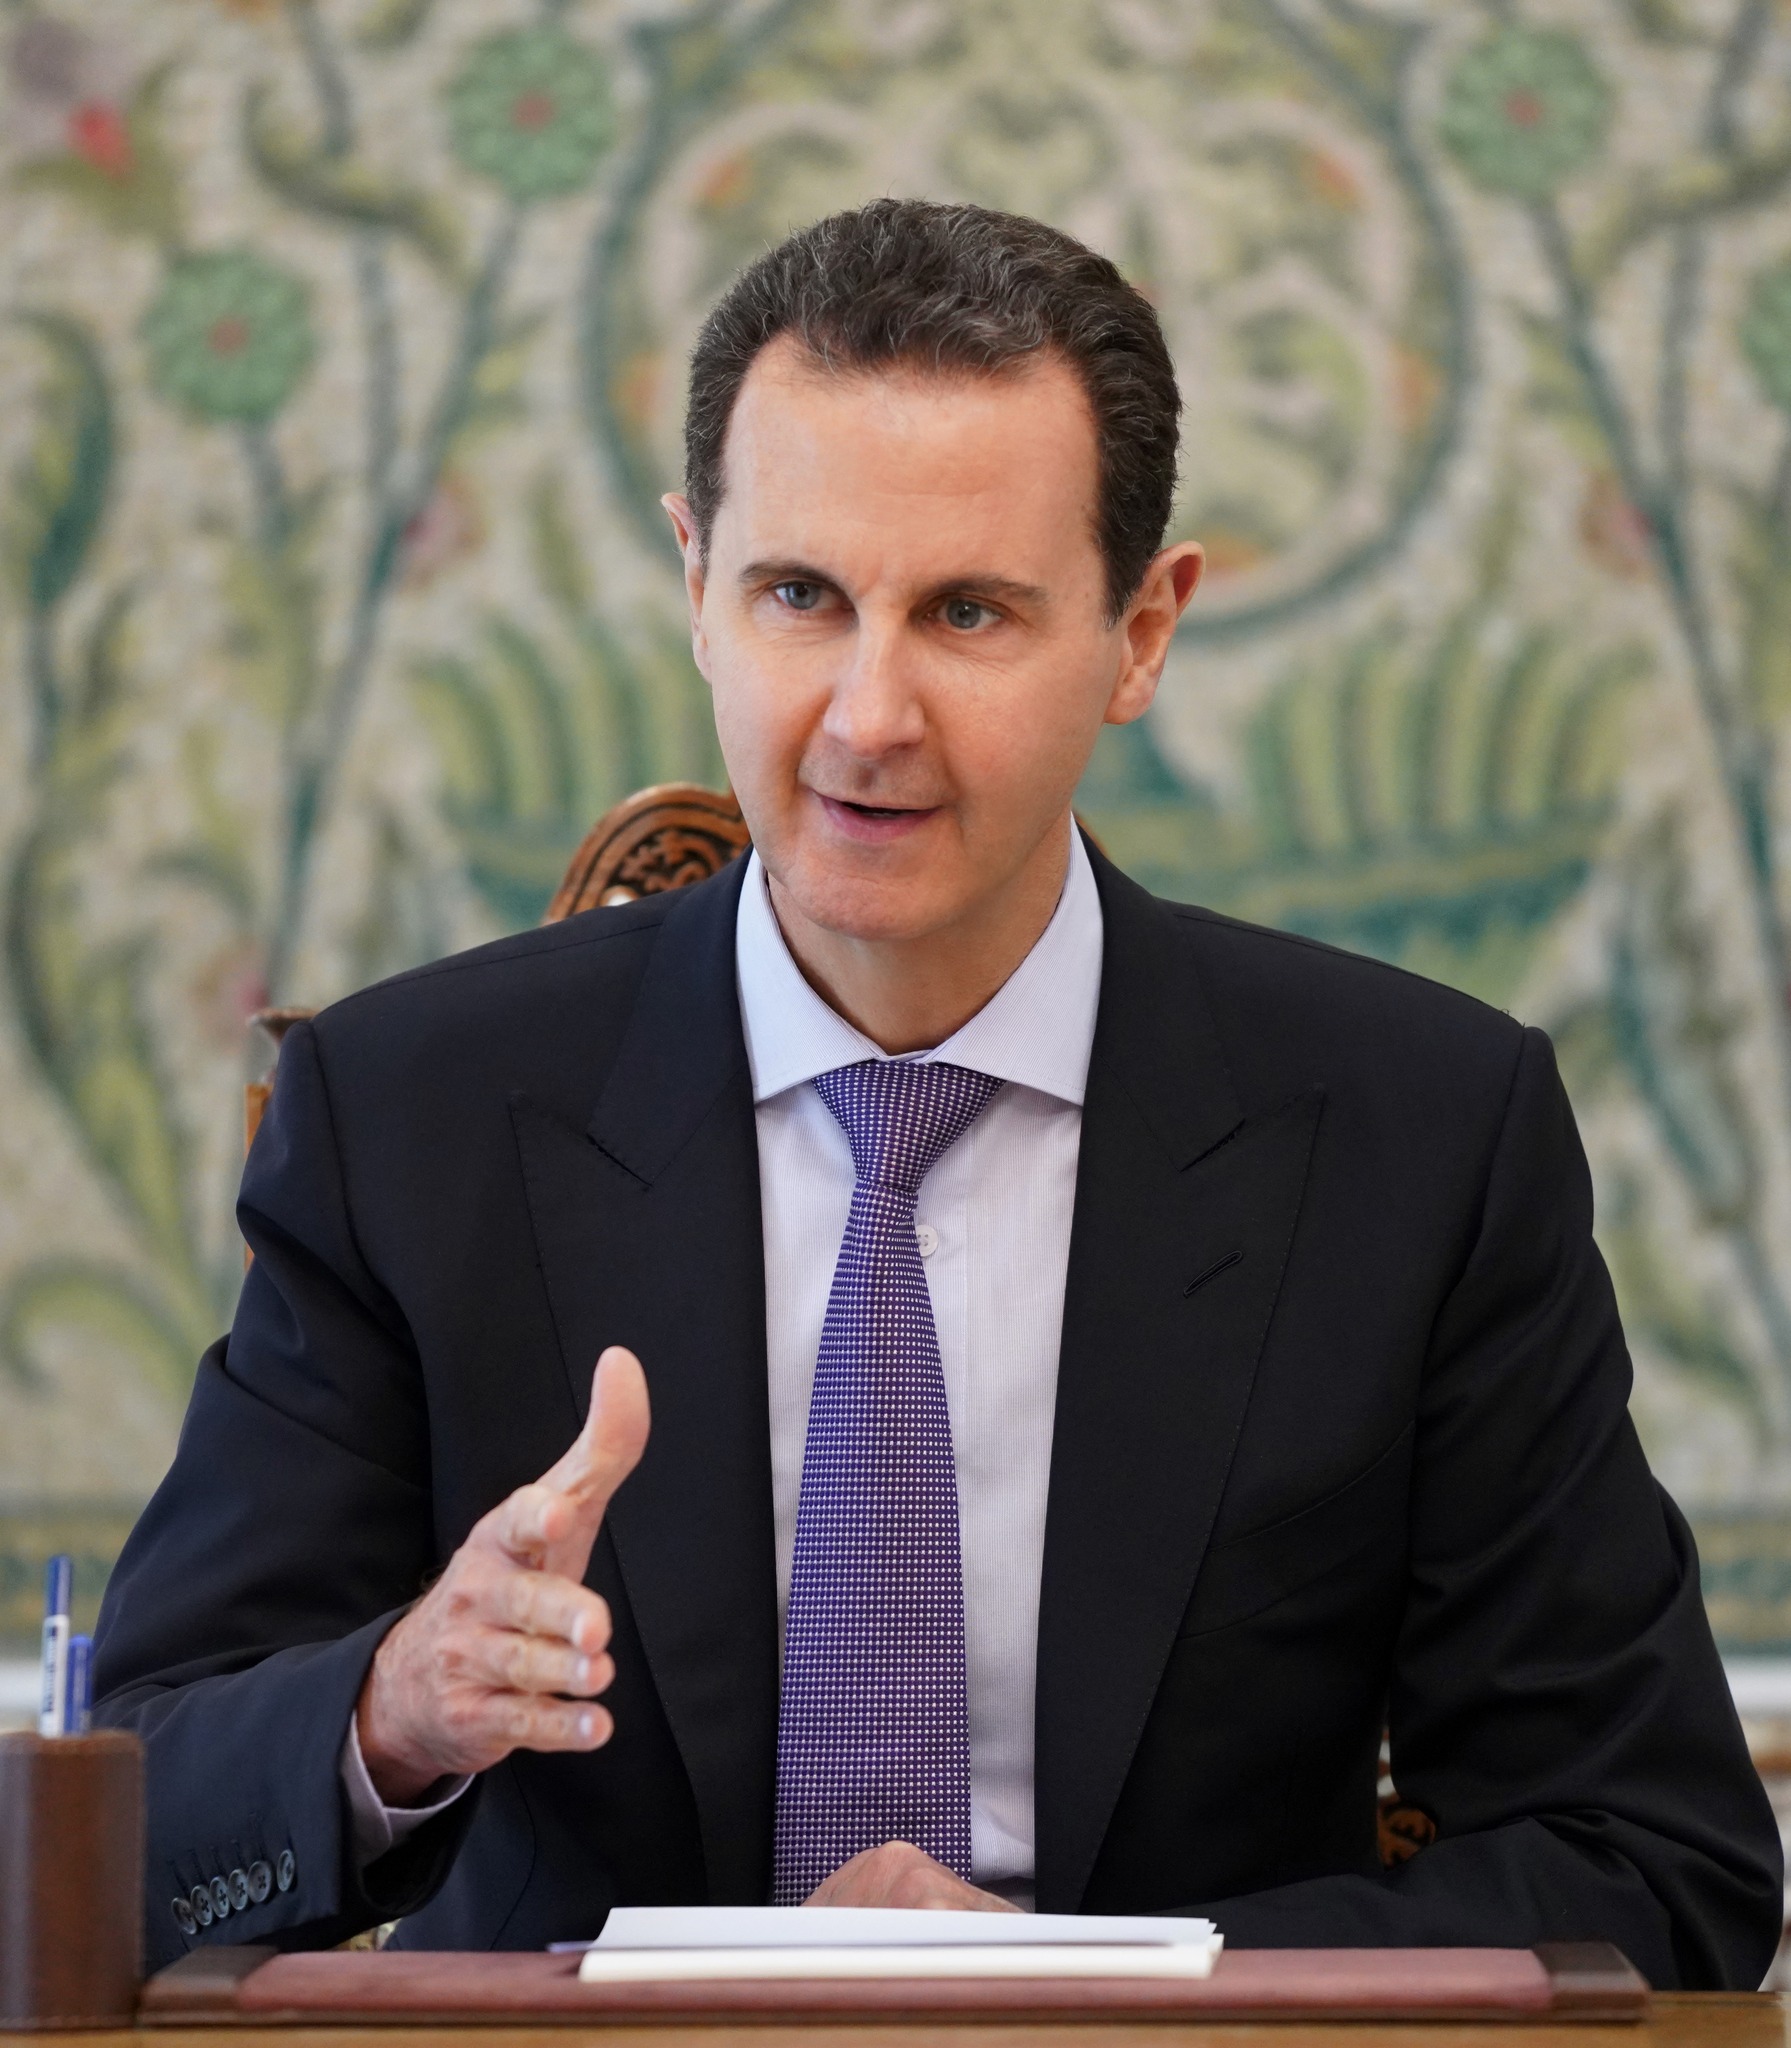 يتوجه الرئيس #بشار_الأسد اليوم إلى مدينة #جدة في المملكة العربية السعودية للمشاركة في أعمال الدورة الثانية والثلاثين لاجتماع مجلس جامعة الدول العربية على مستوى القمة التي ستنعقد غداً الجمعة.